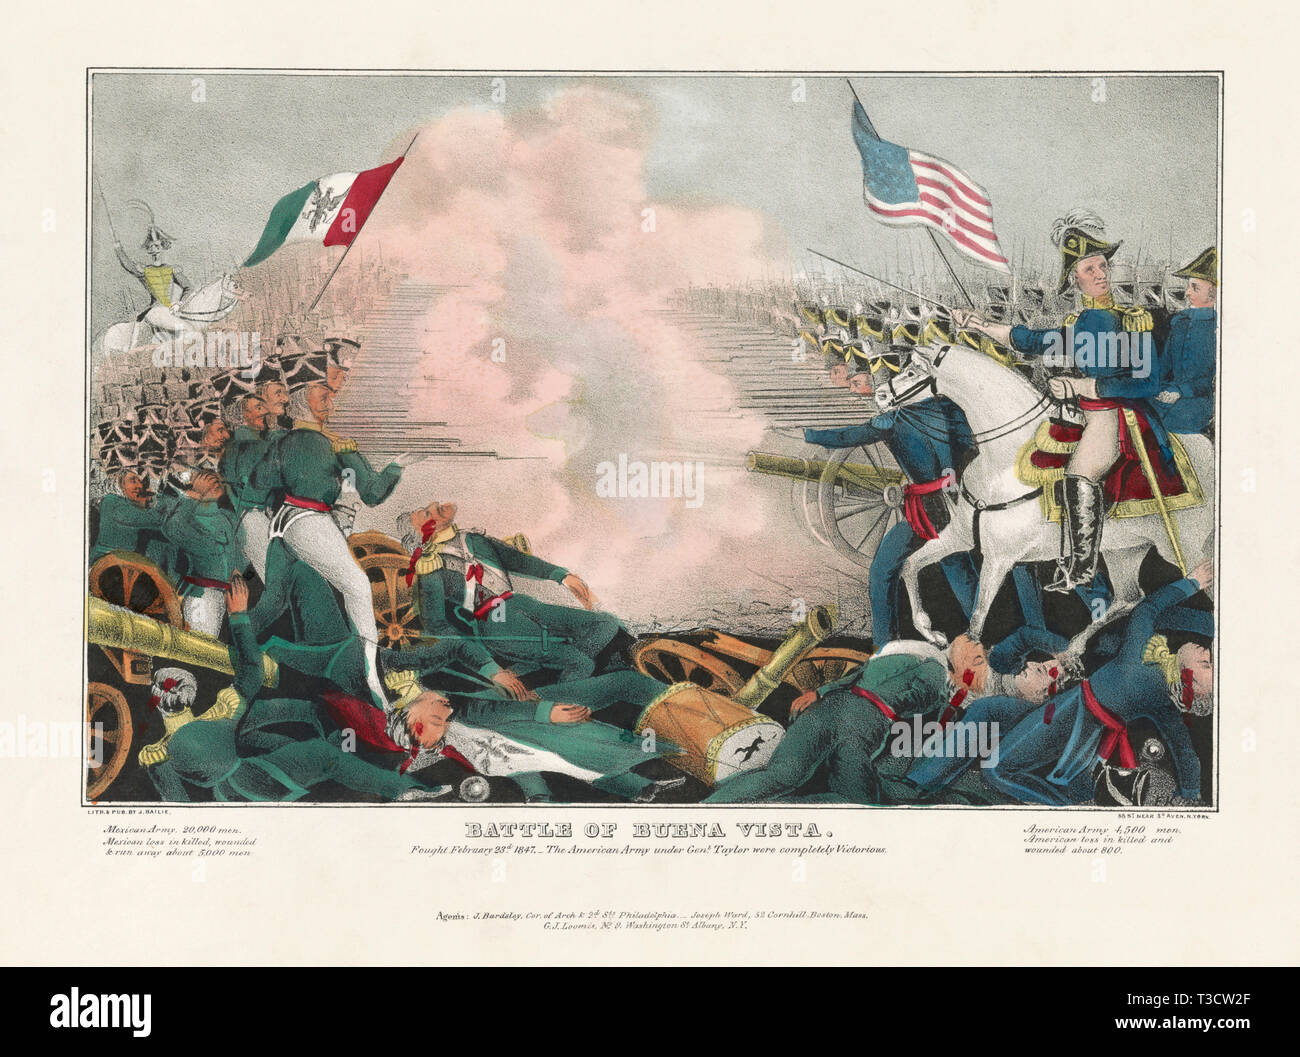 Bataille de Buena Vista, ont combattu le 23 février 1847 - L'Armée américaine du général Taylor étaient complètement victorieux, lithographie, James Baillie, 1847 Banque D'Images